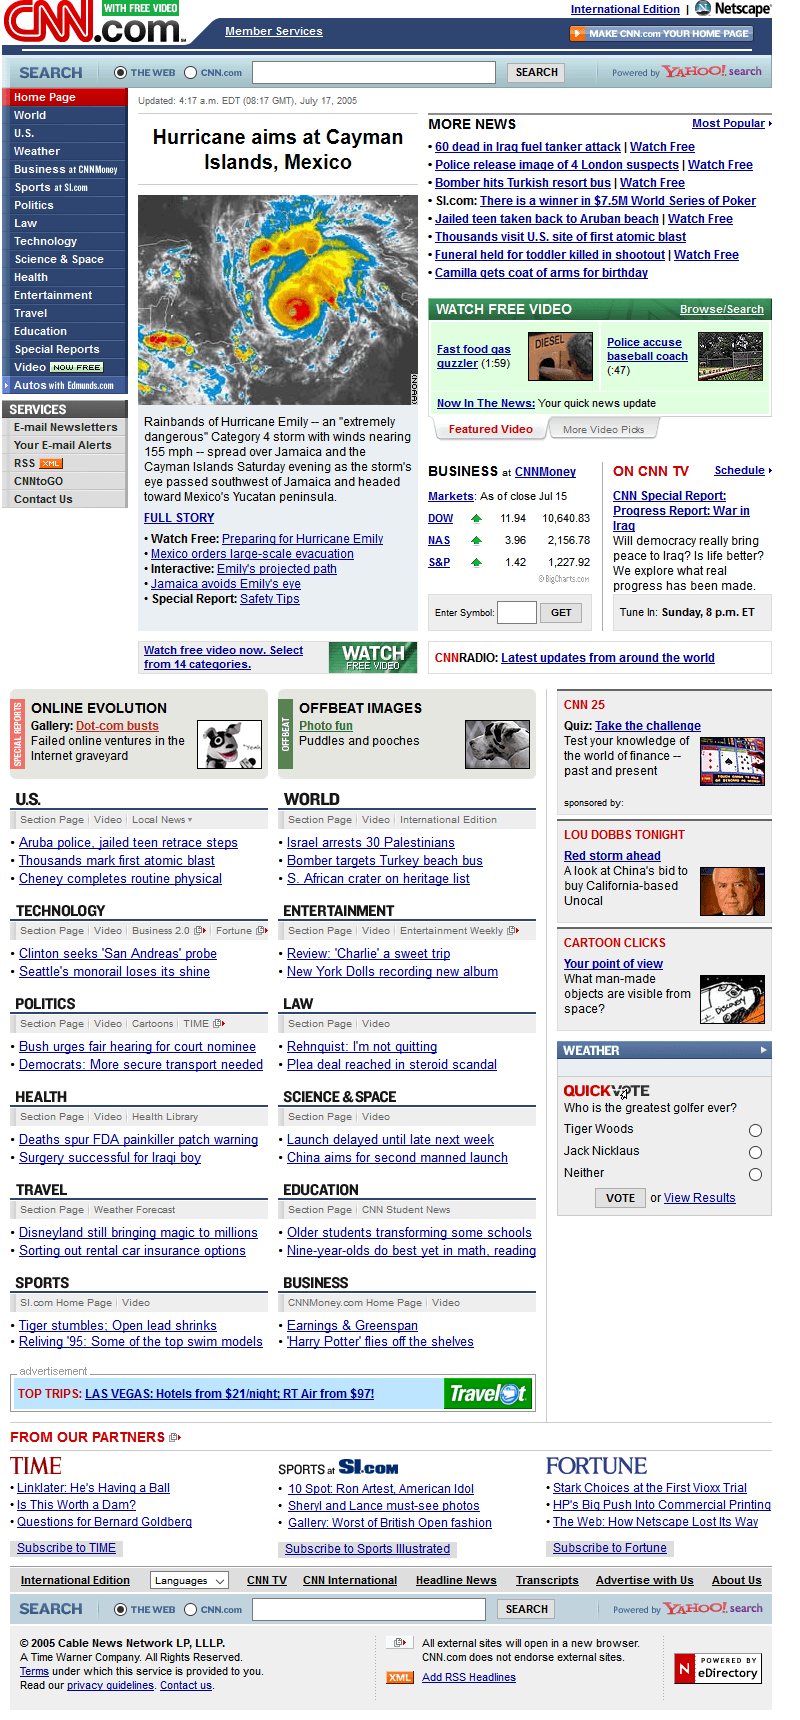 CNN.com in 2005